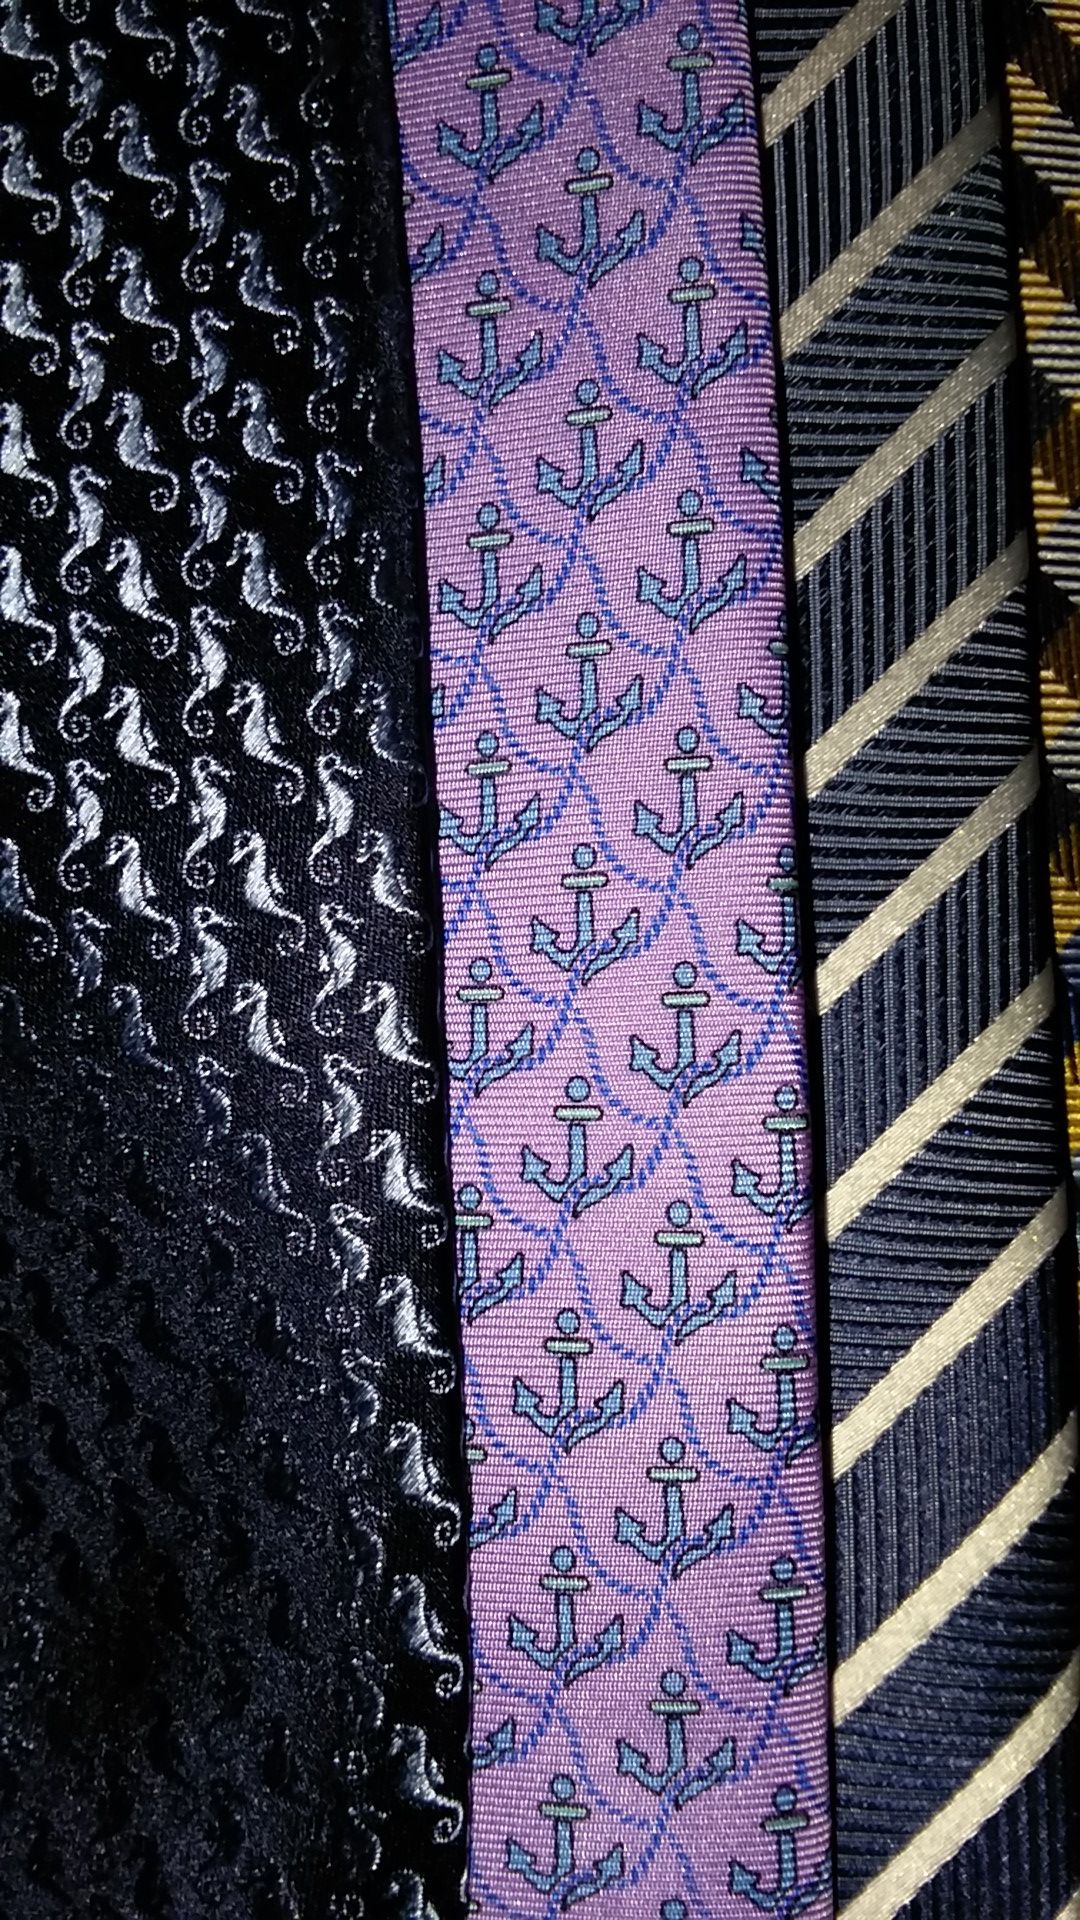 Men's business suit ties. Tie set, 4 ties